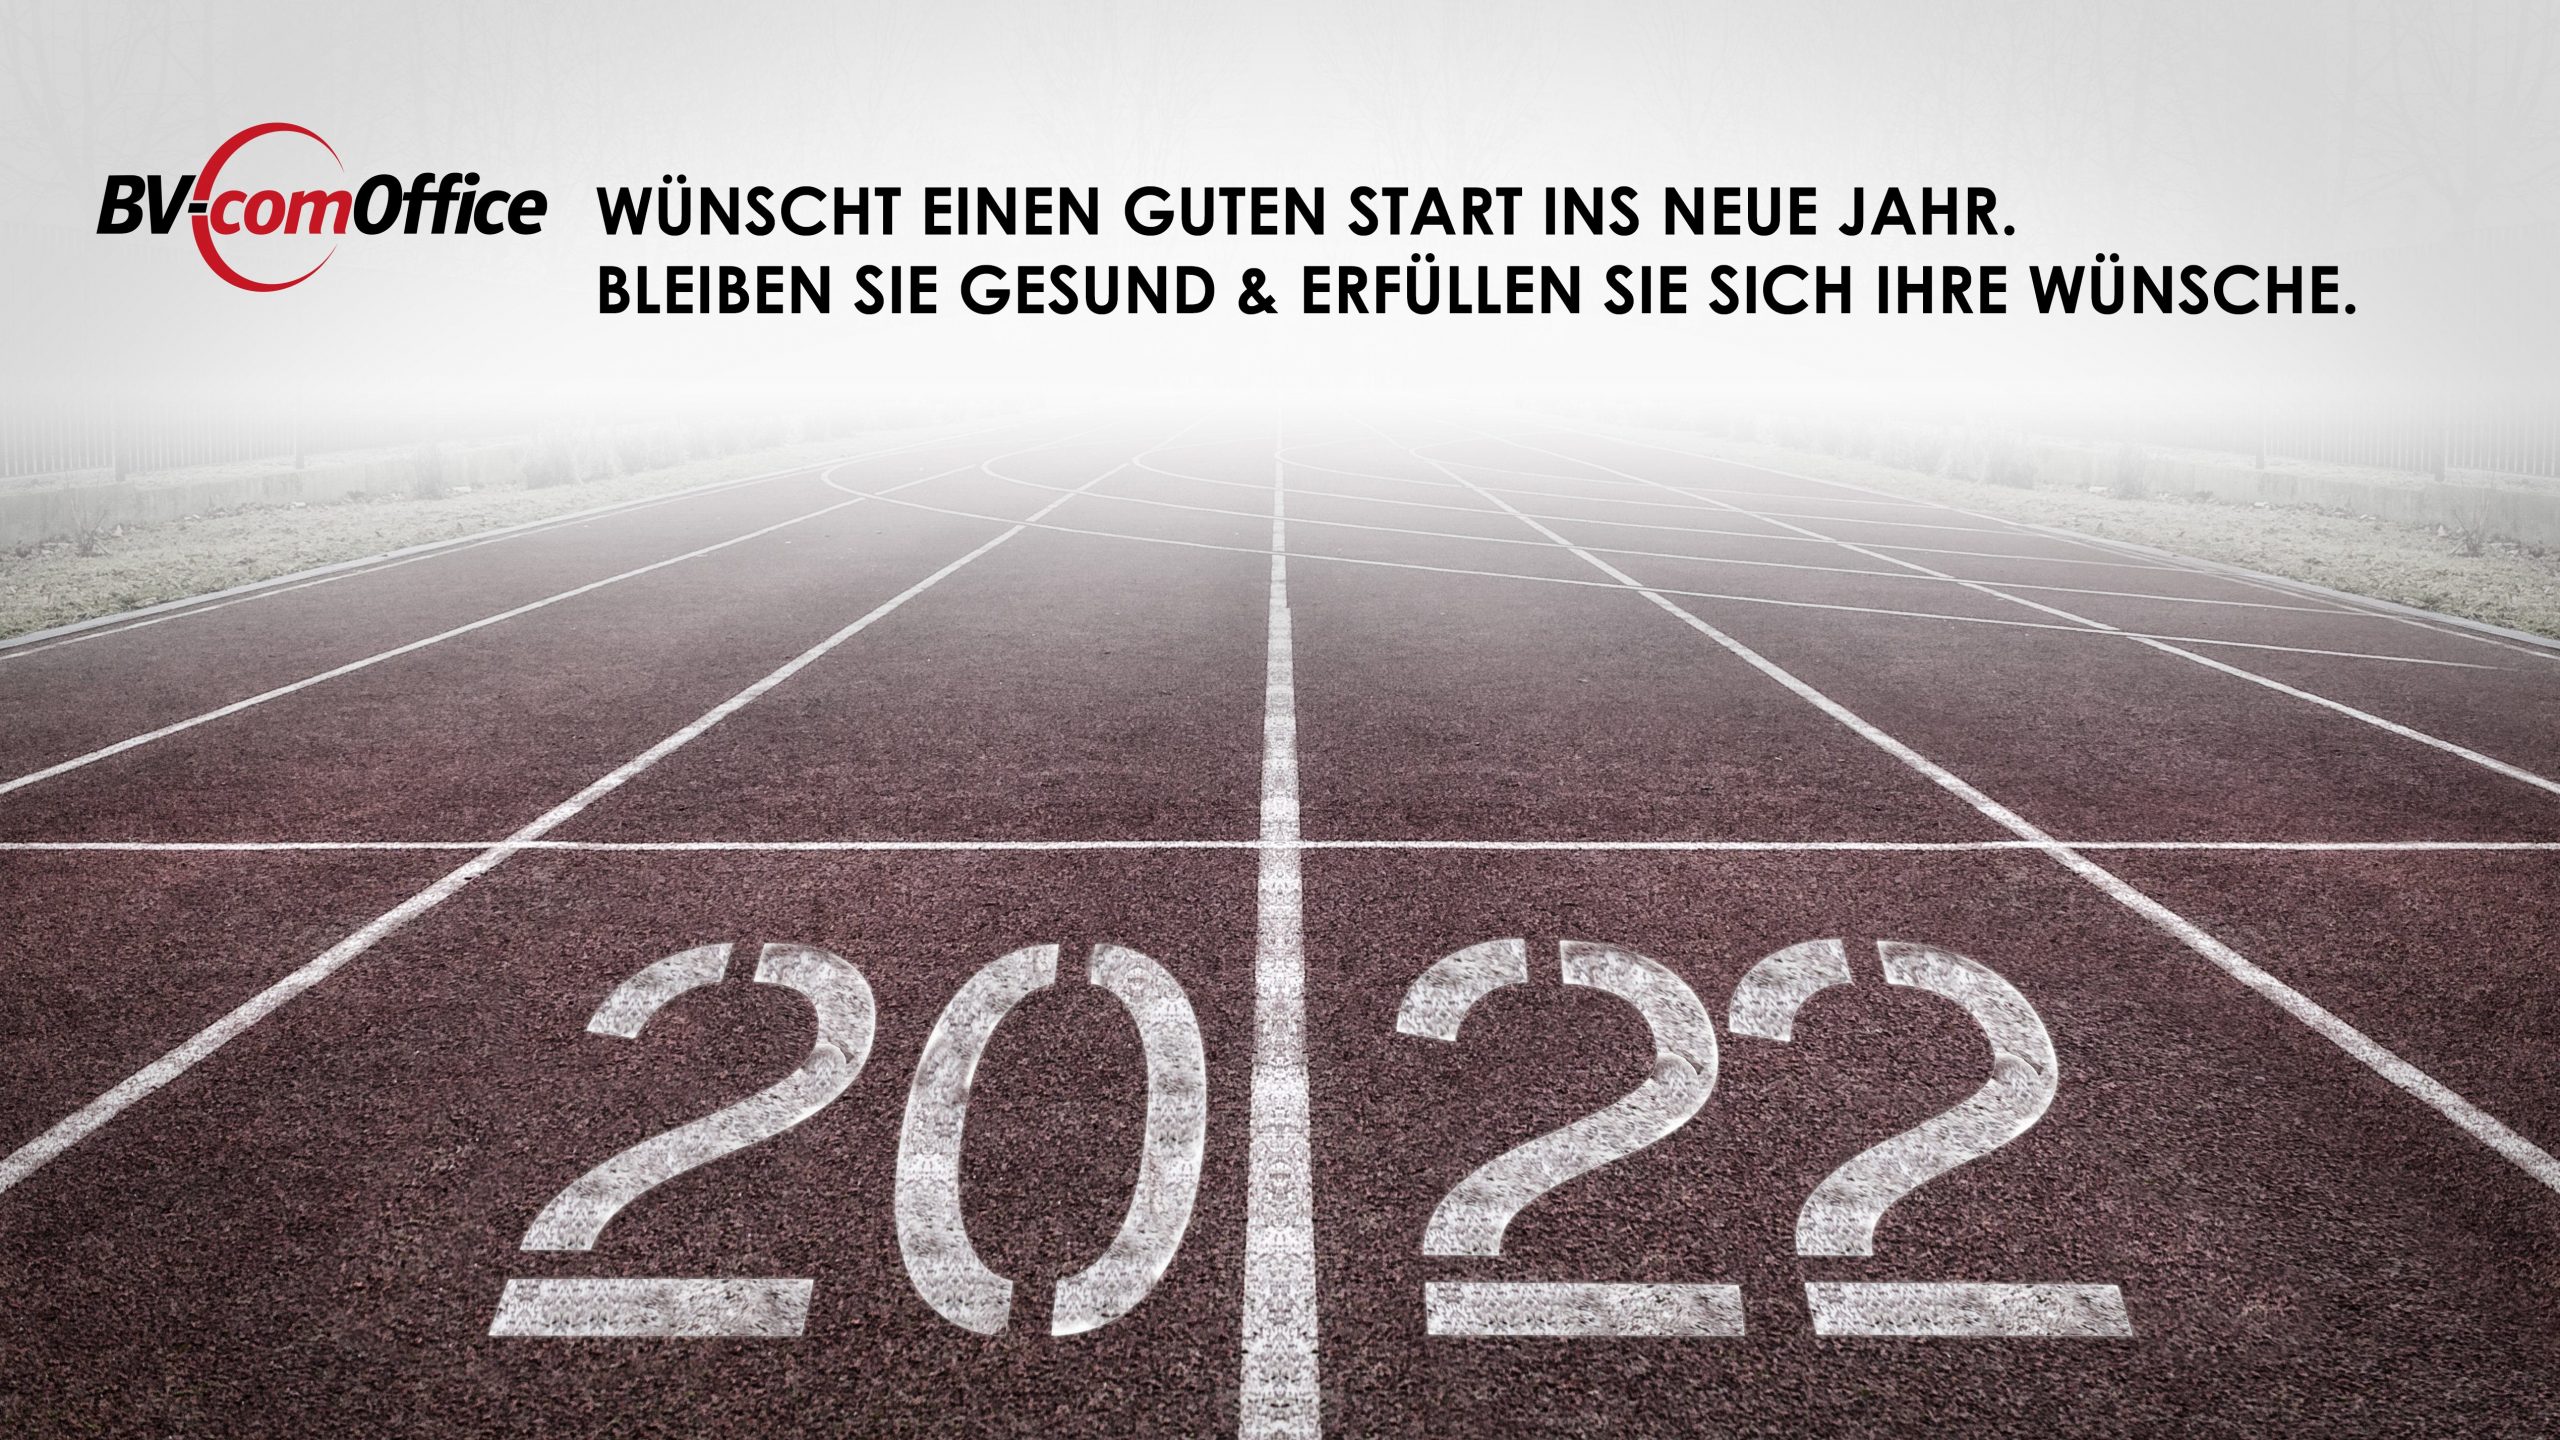 BV-comOffice_Start in 2022